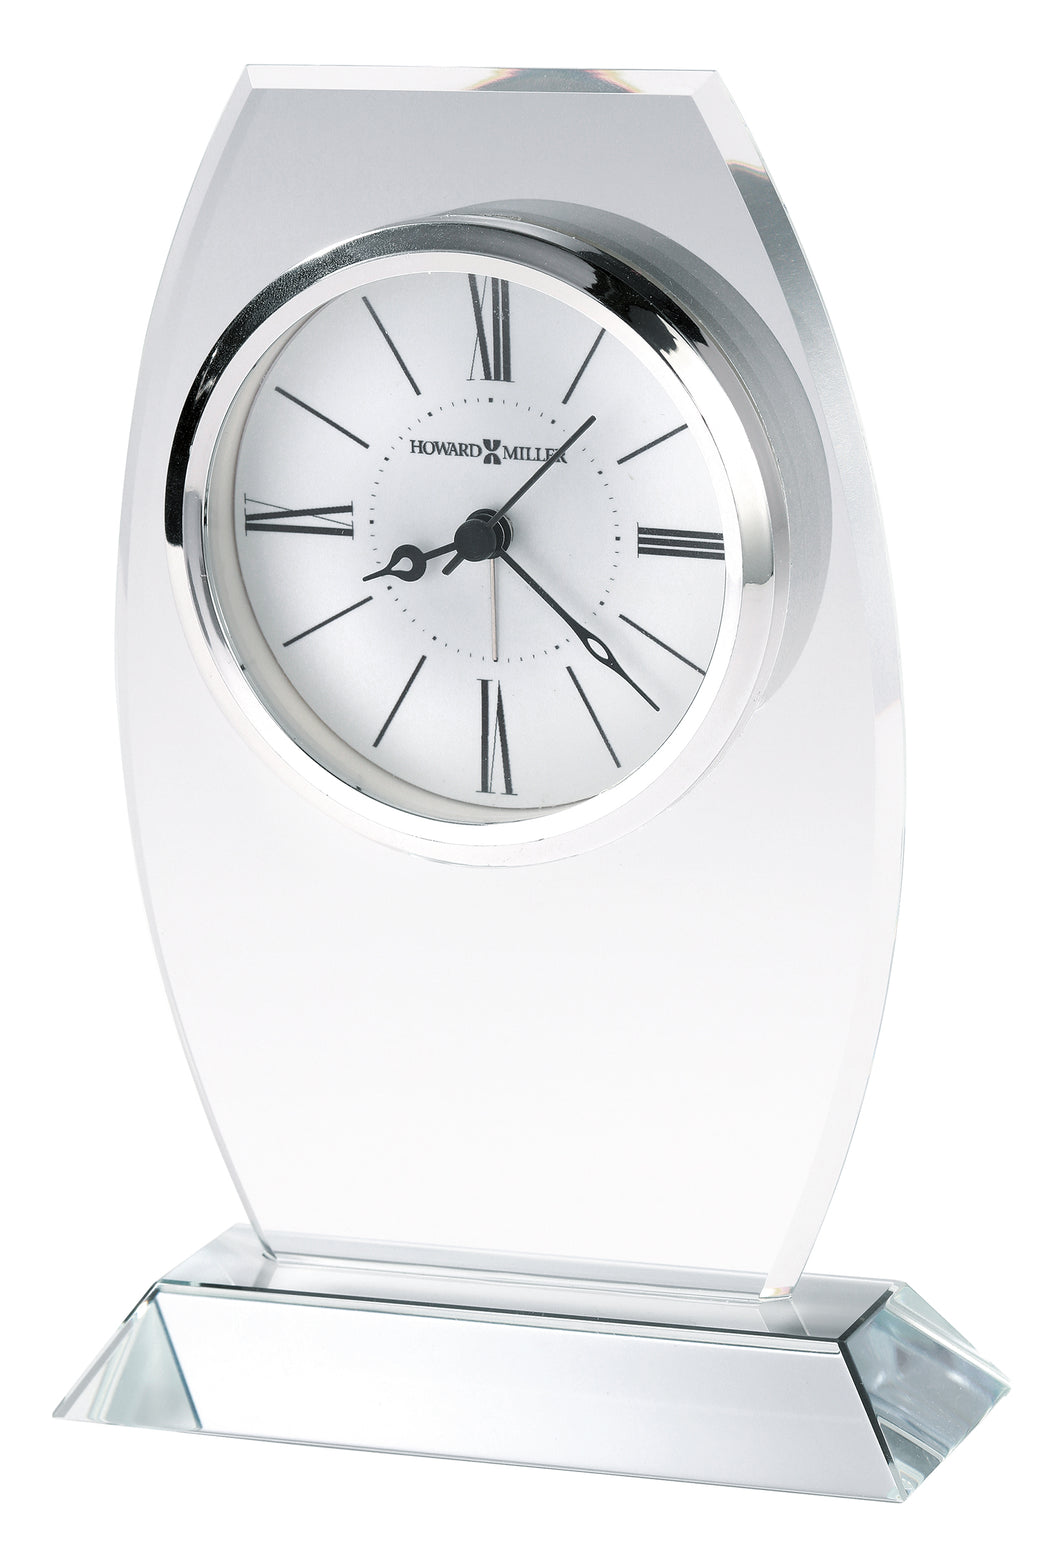 Cabri Tabletop Alarm Clock